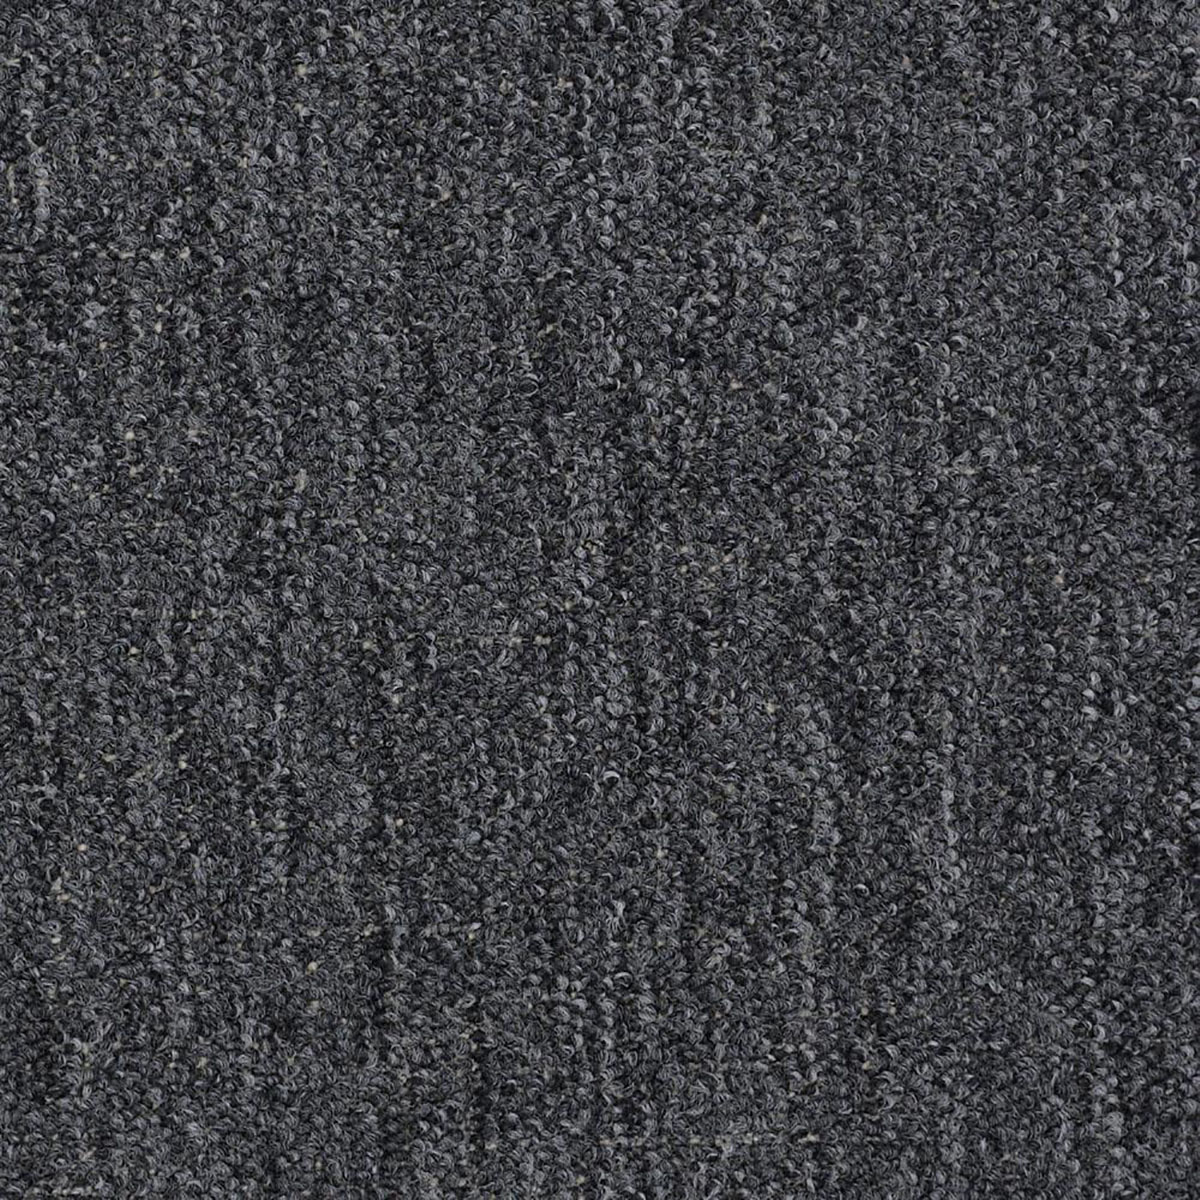 Carpet Grey Per Sq. Ft.